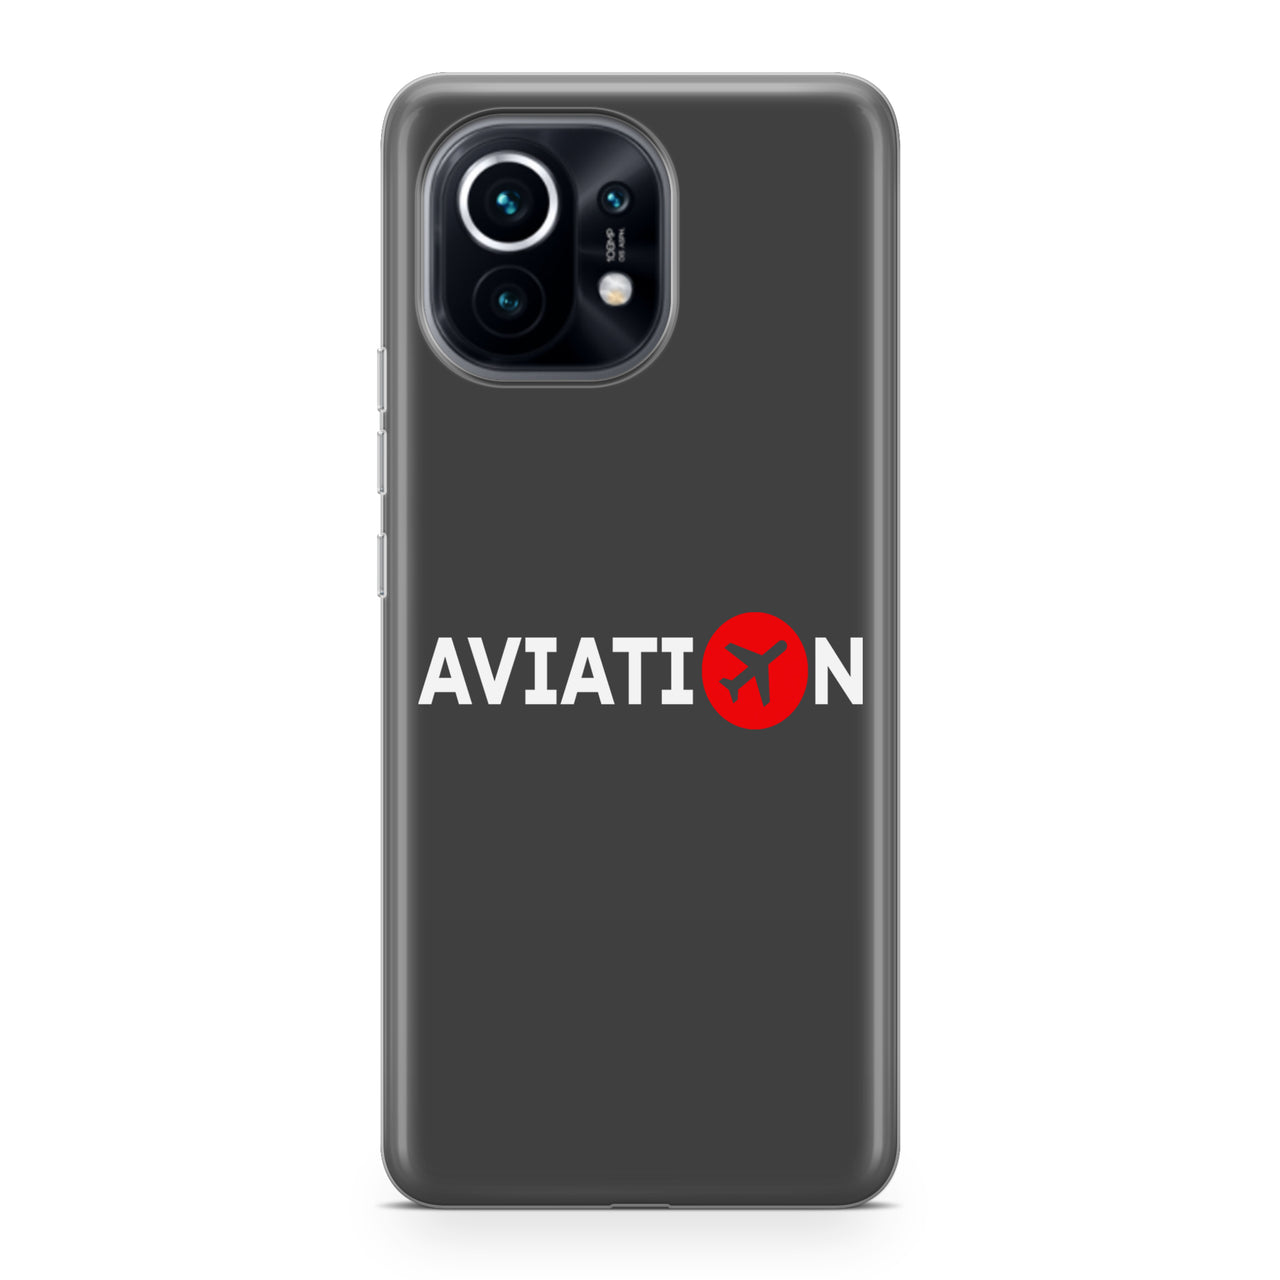 Aviation Designed Xiaomi Cases